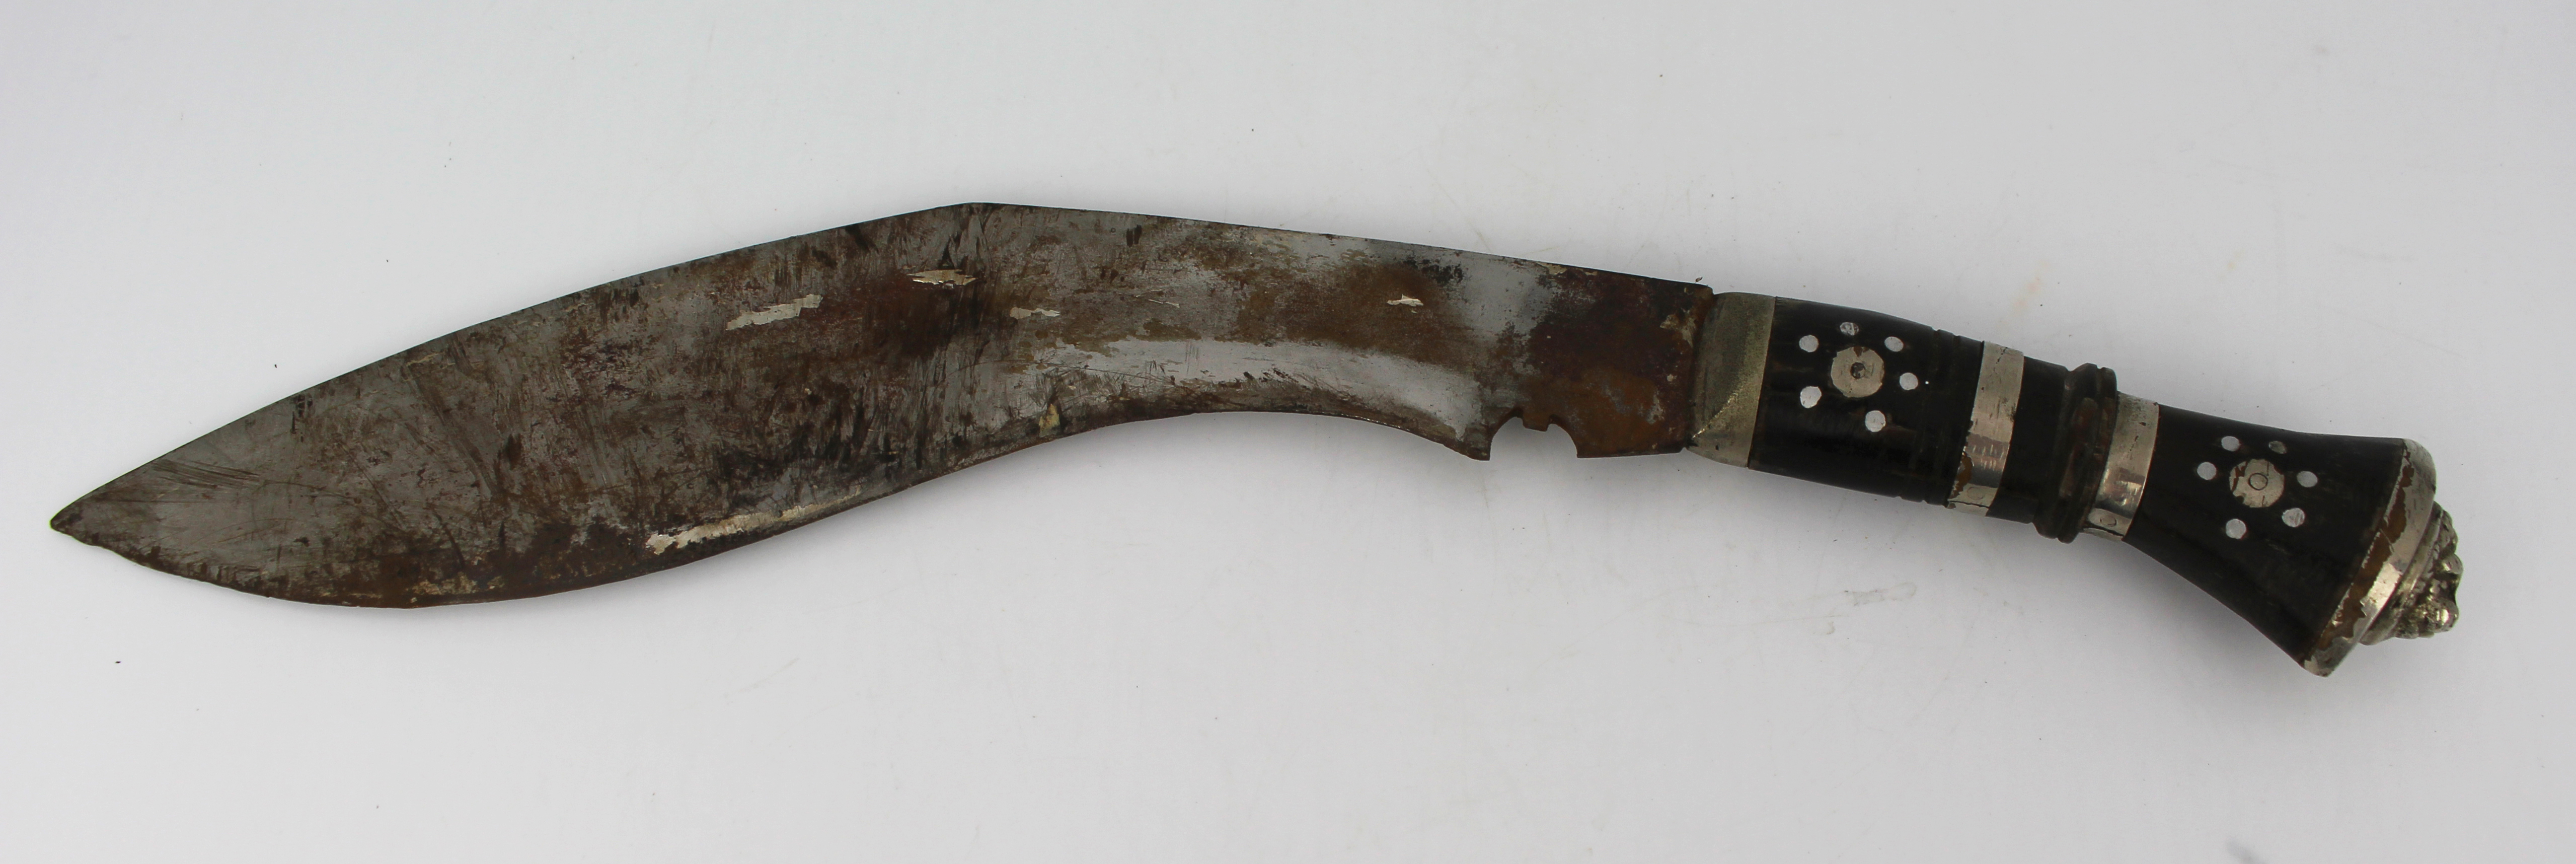 Vintage Kukri Gurkha Knife in Sheaf - Image 2 of 2